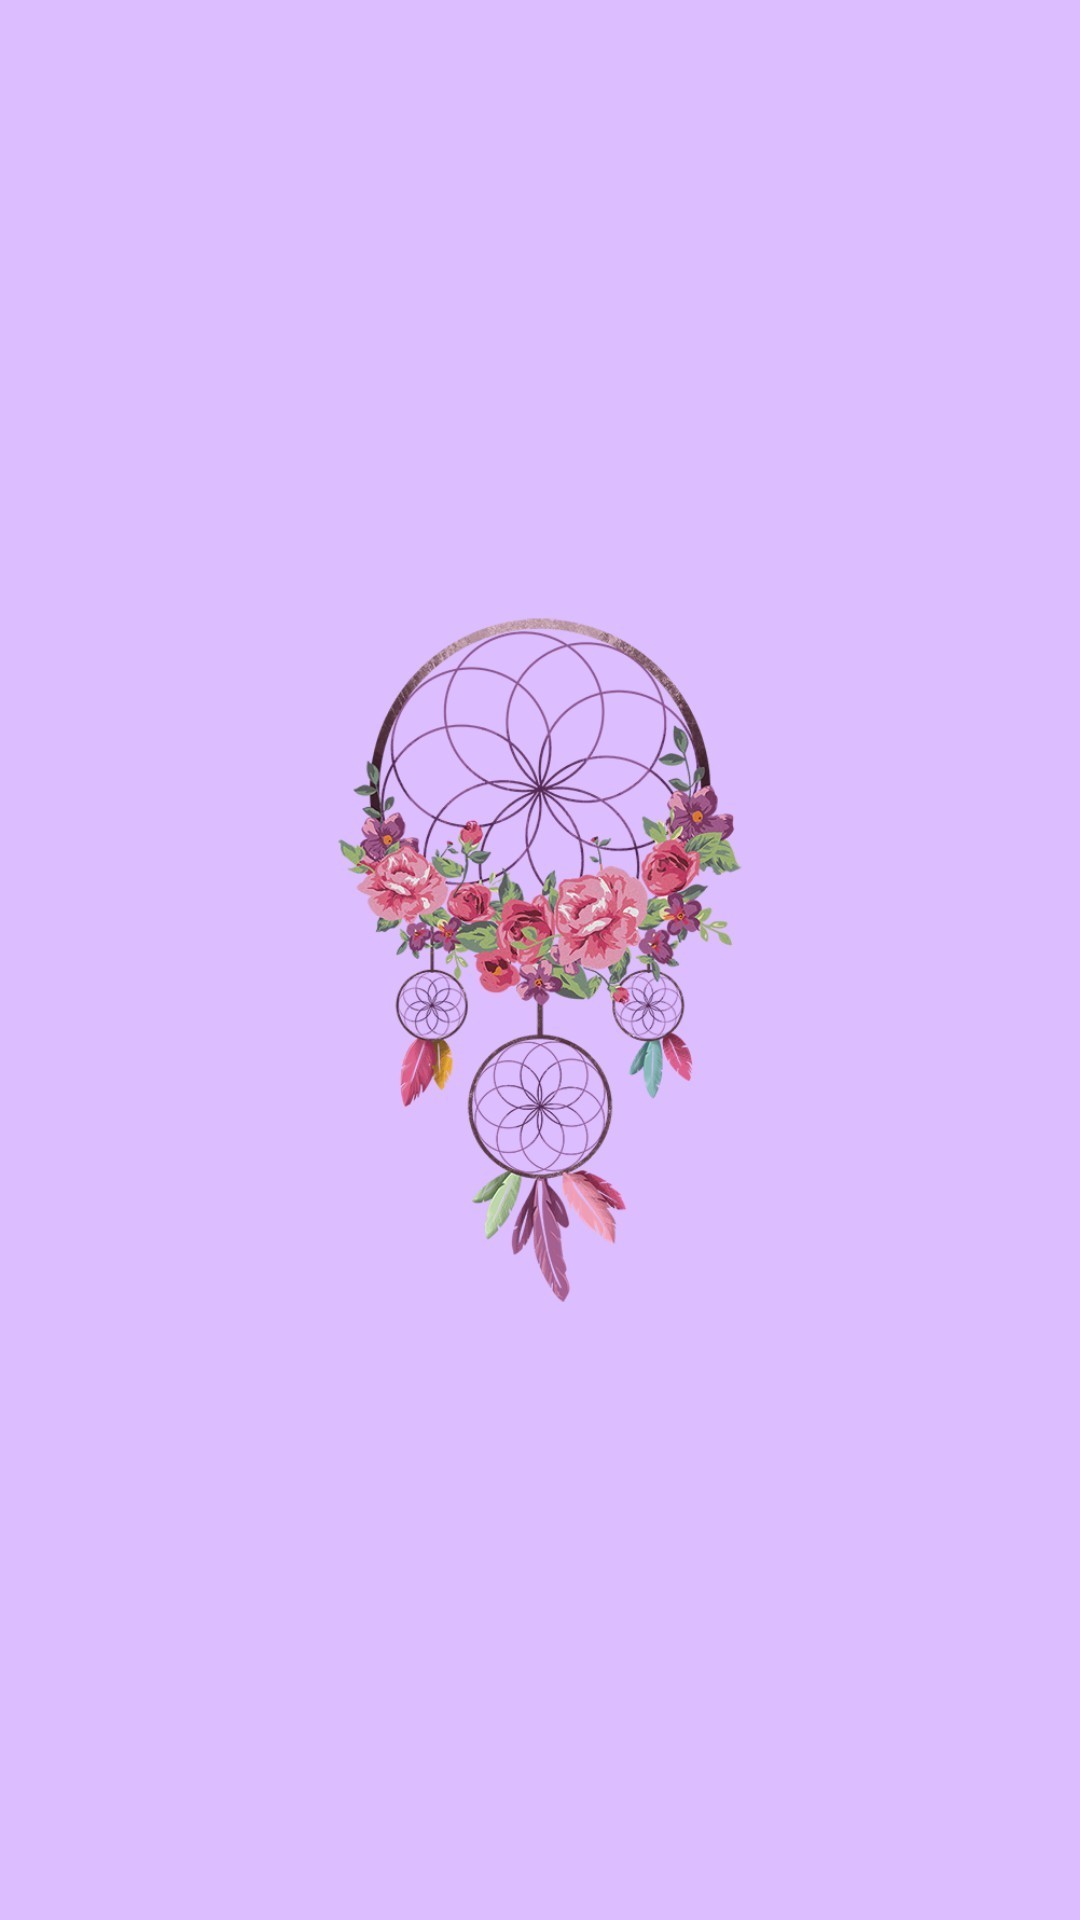 dreamcatcher fond d'écran tumblr,produit,rose,violet,lilas,illustration